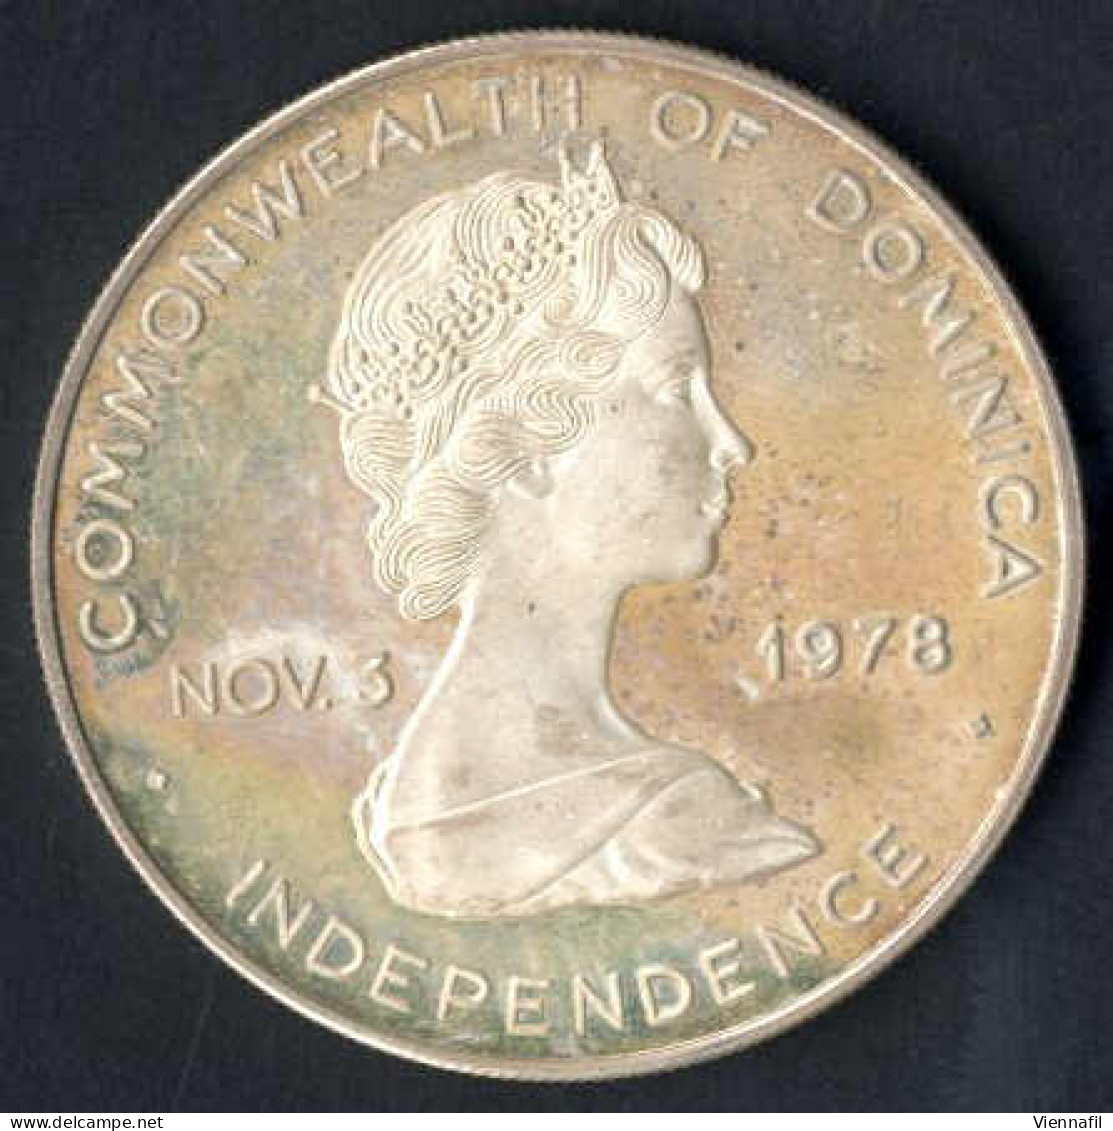 10 Dollar Johannes Paul II,1979, Und Zwei Silbermünzen 1 Peso 25 Jahre Zentralbank, 1972, Unzirkuliert Und PP, Feingewic - Dominicaanse Republiek